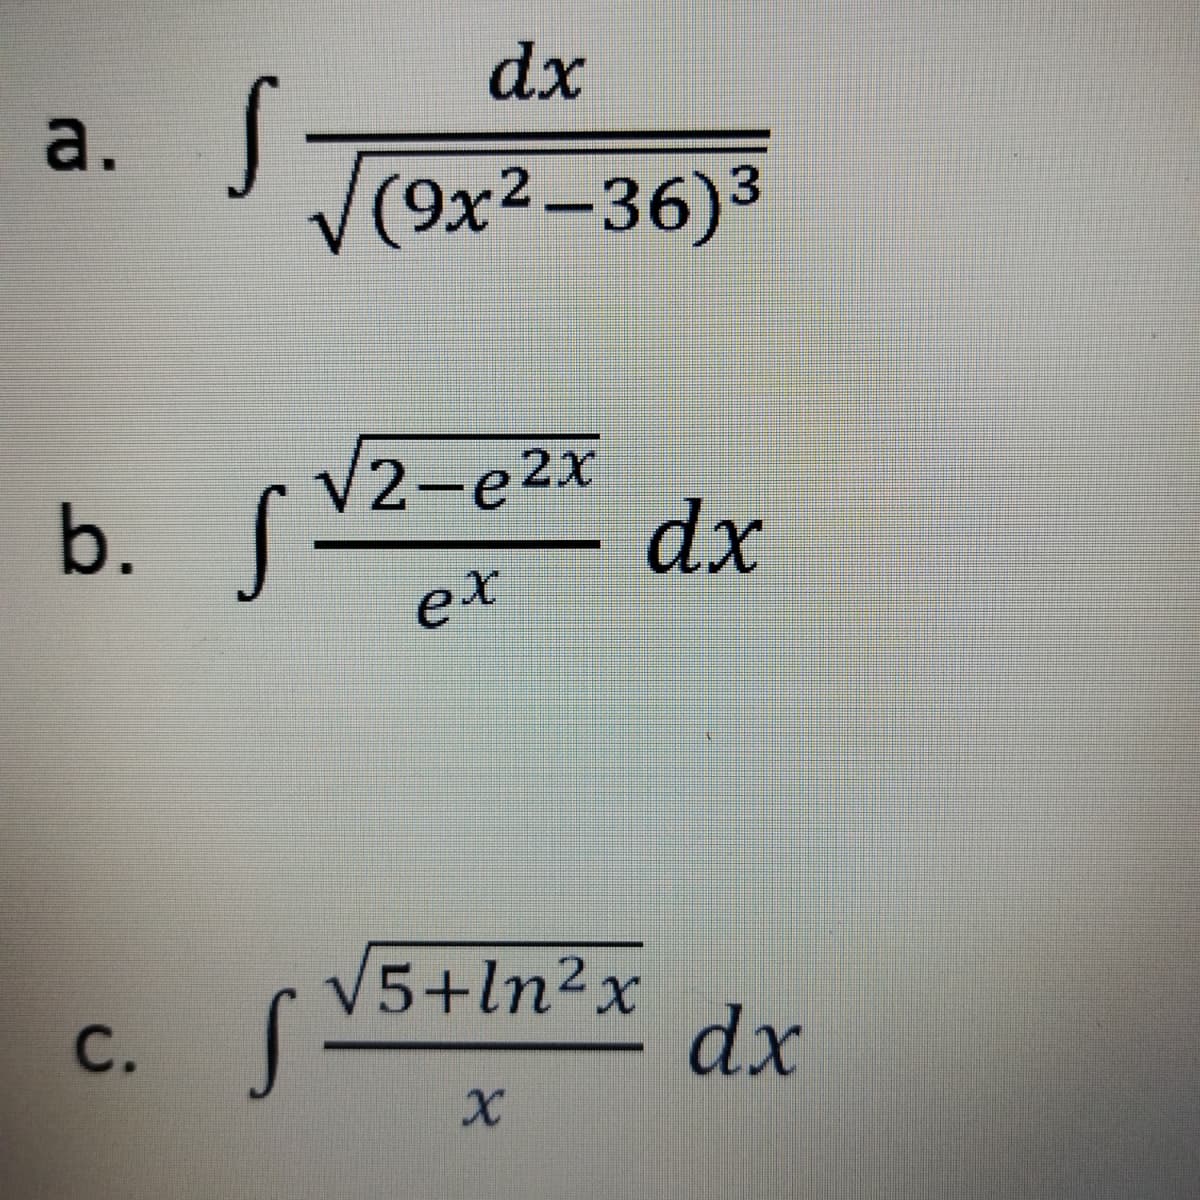 dx
a.
(9x2-36)3
b. f
V2-e2x
dx
ex
V5+ln²x
dx
C.
